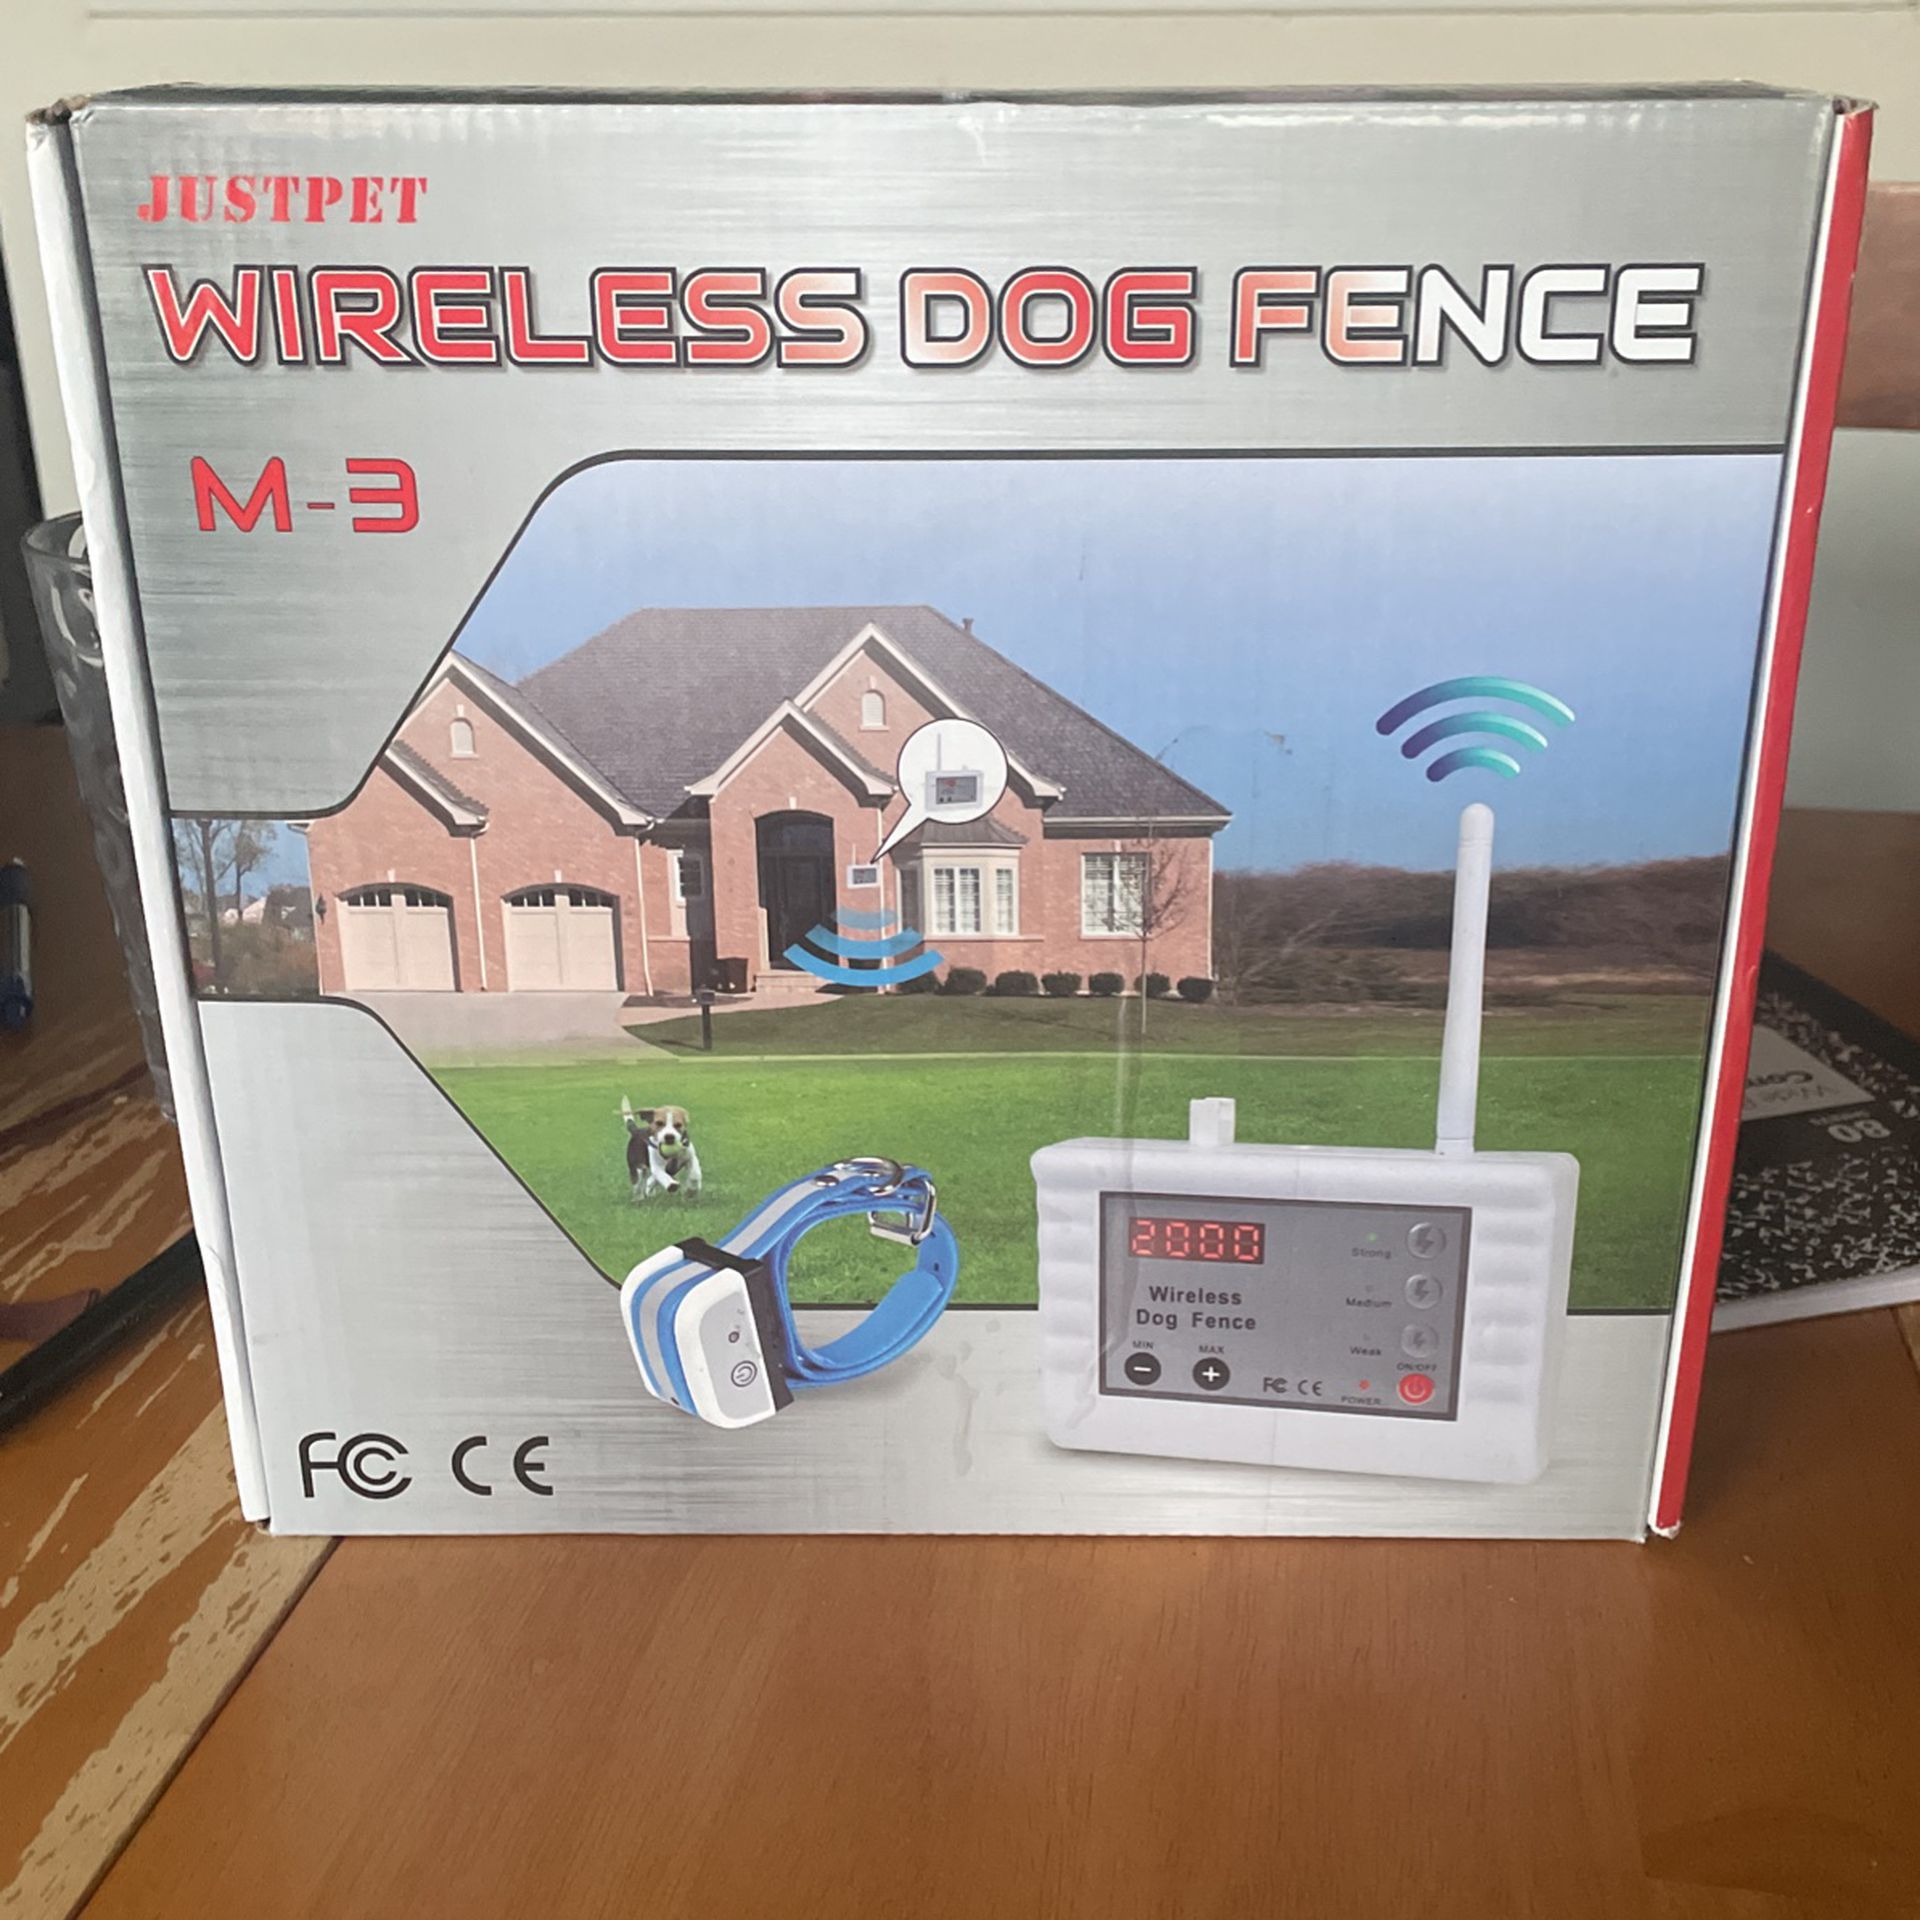 Wireless Dog Fence